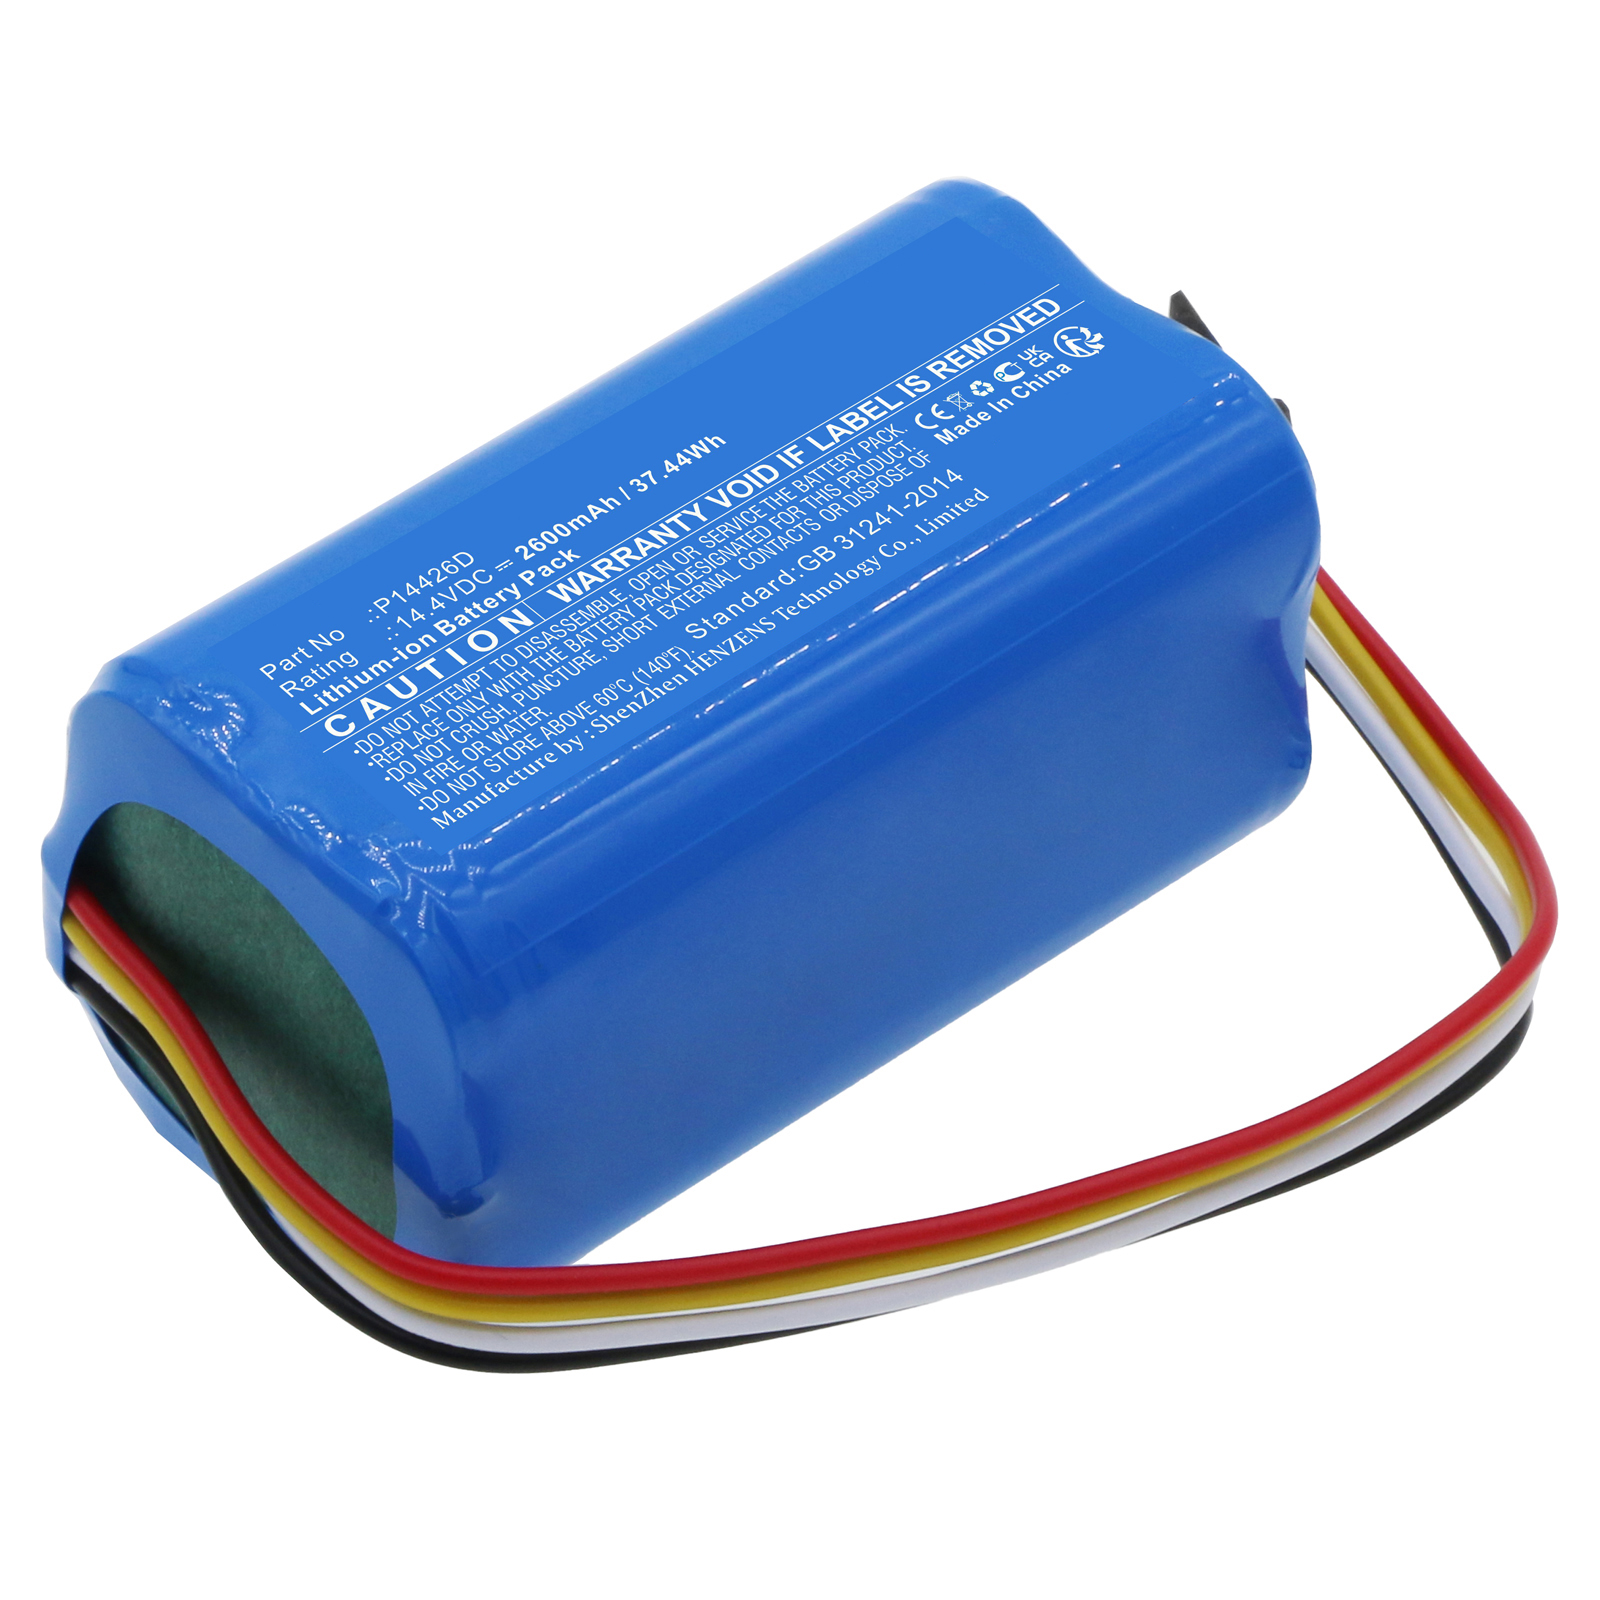 Synergy Digital Vacuum Cleaner Battery, Compatible with Eureka P14426D Vacuum Cleaner Battery (Li-ion, 14.4V, 2600mAh)